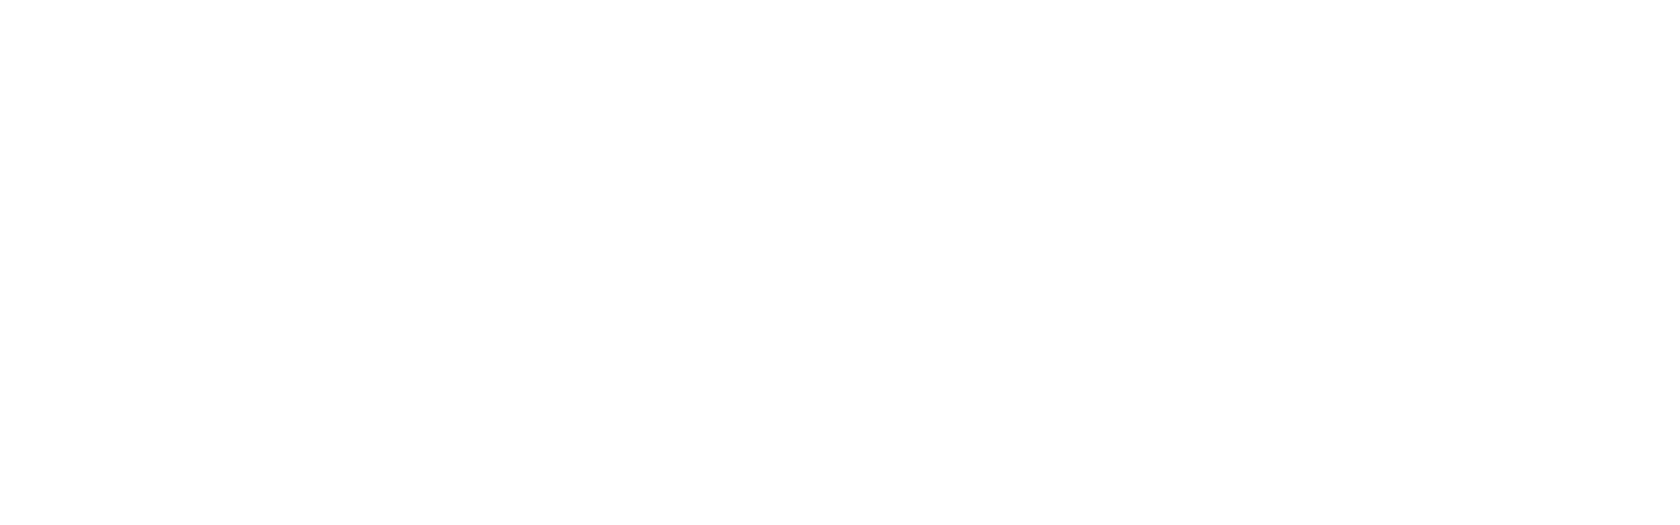 tNavigator-logo